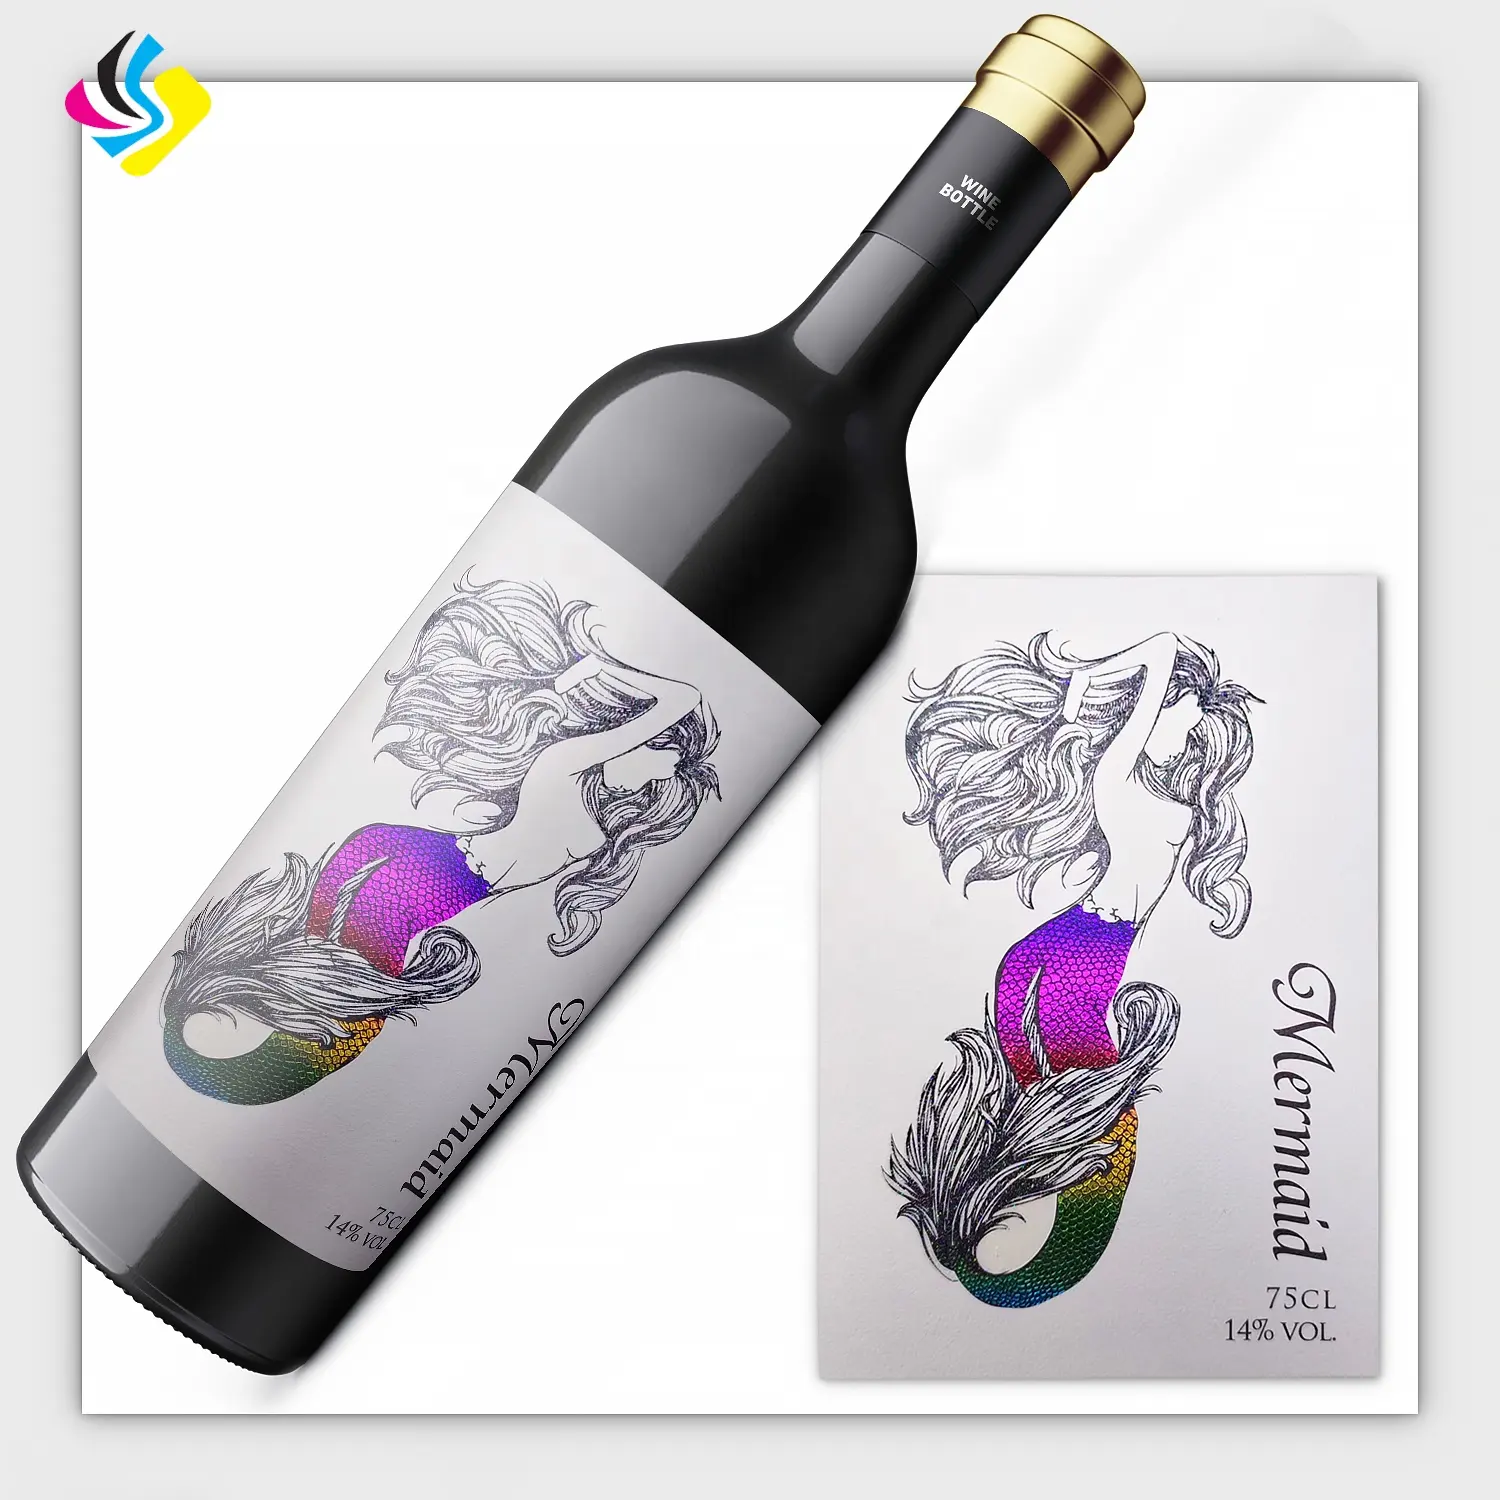 Etiqueta personalizada do frasco do vinil Etiquetas impermeáveis requintadas para vários vinhos usados especialmente em barras novas da fábrica